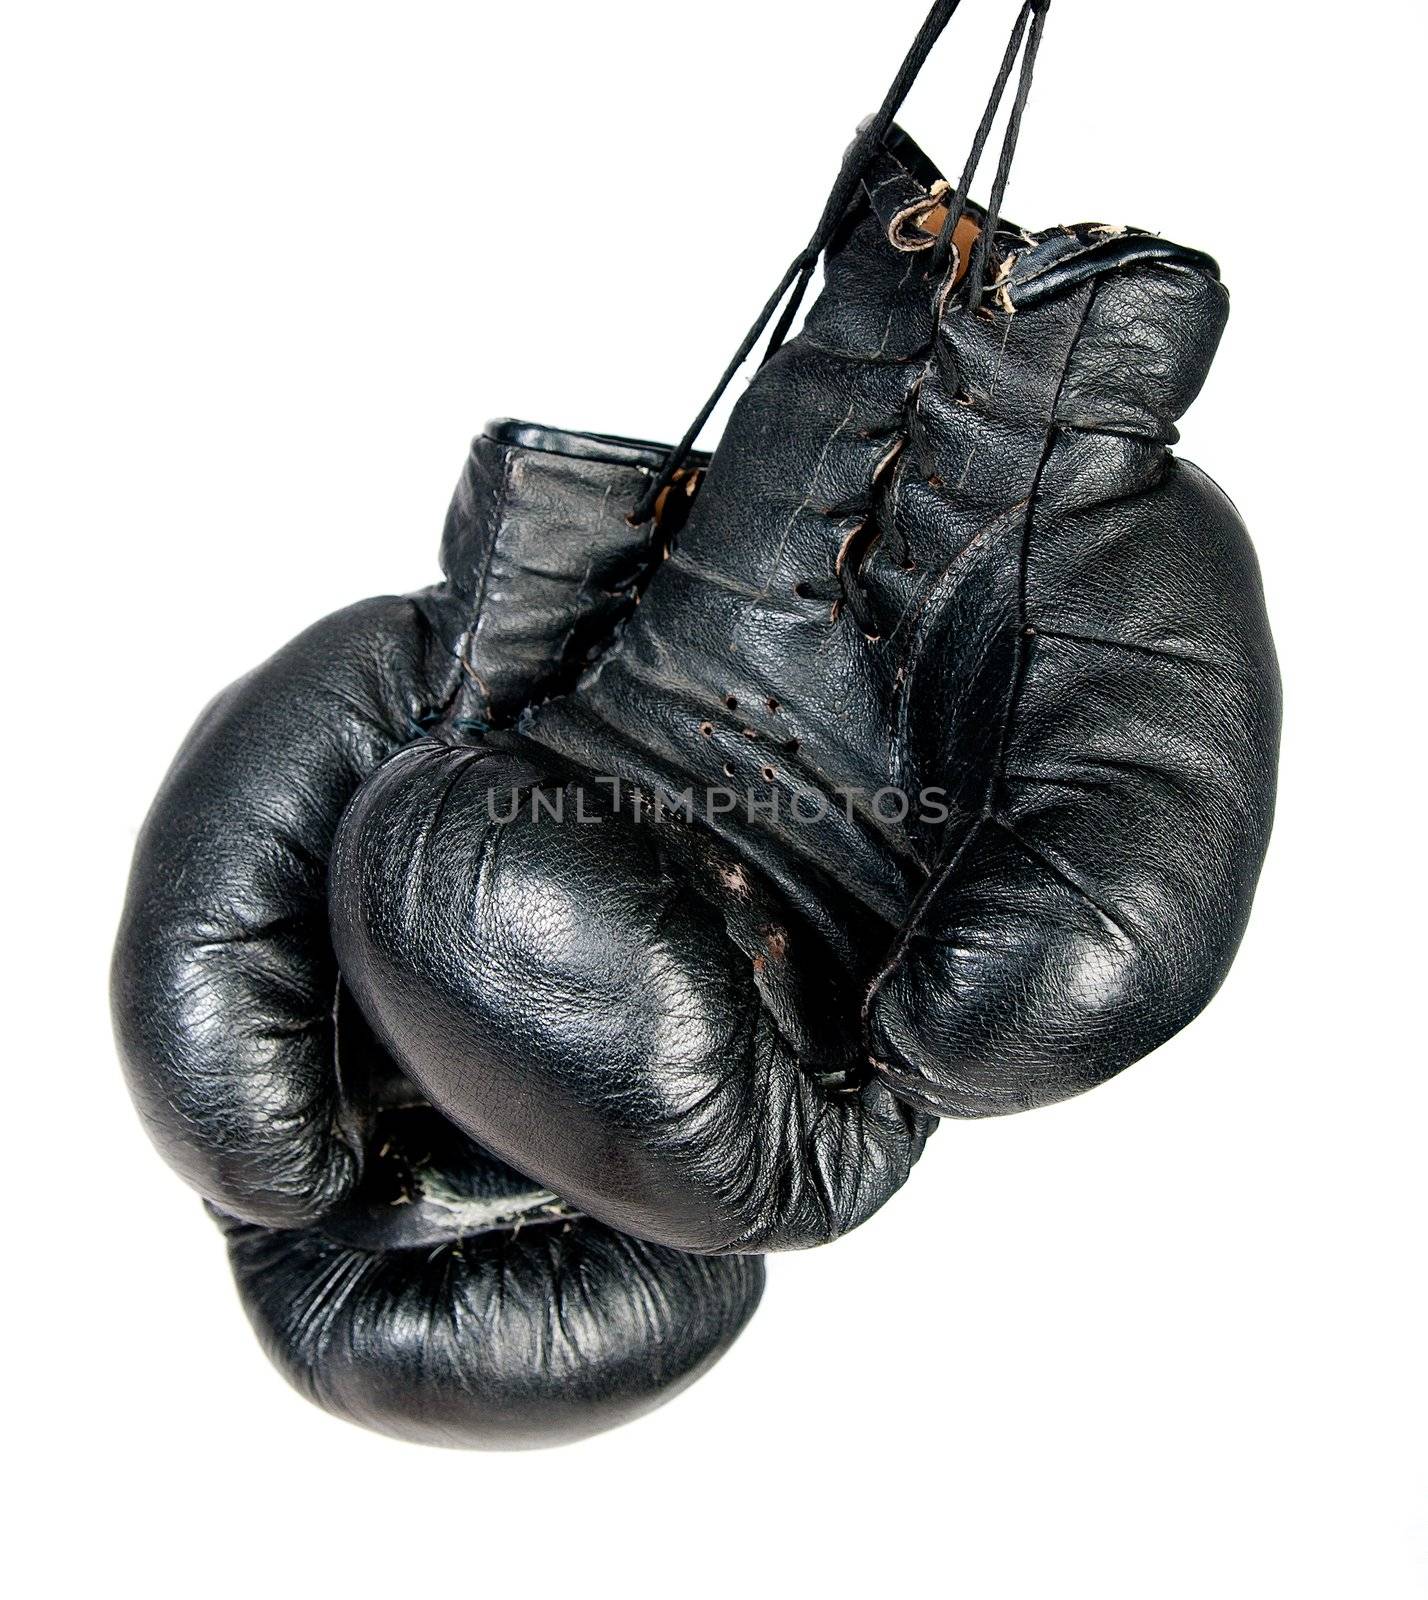 Boxing Gloves by GekaSkr